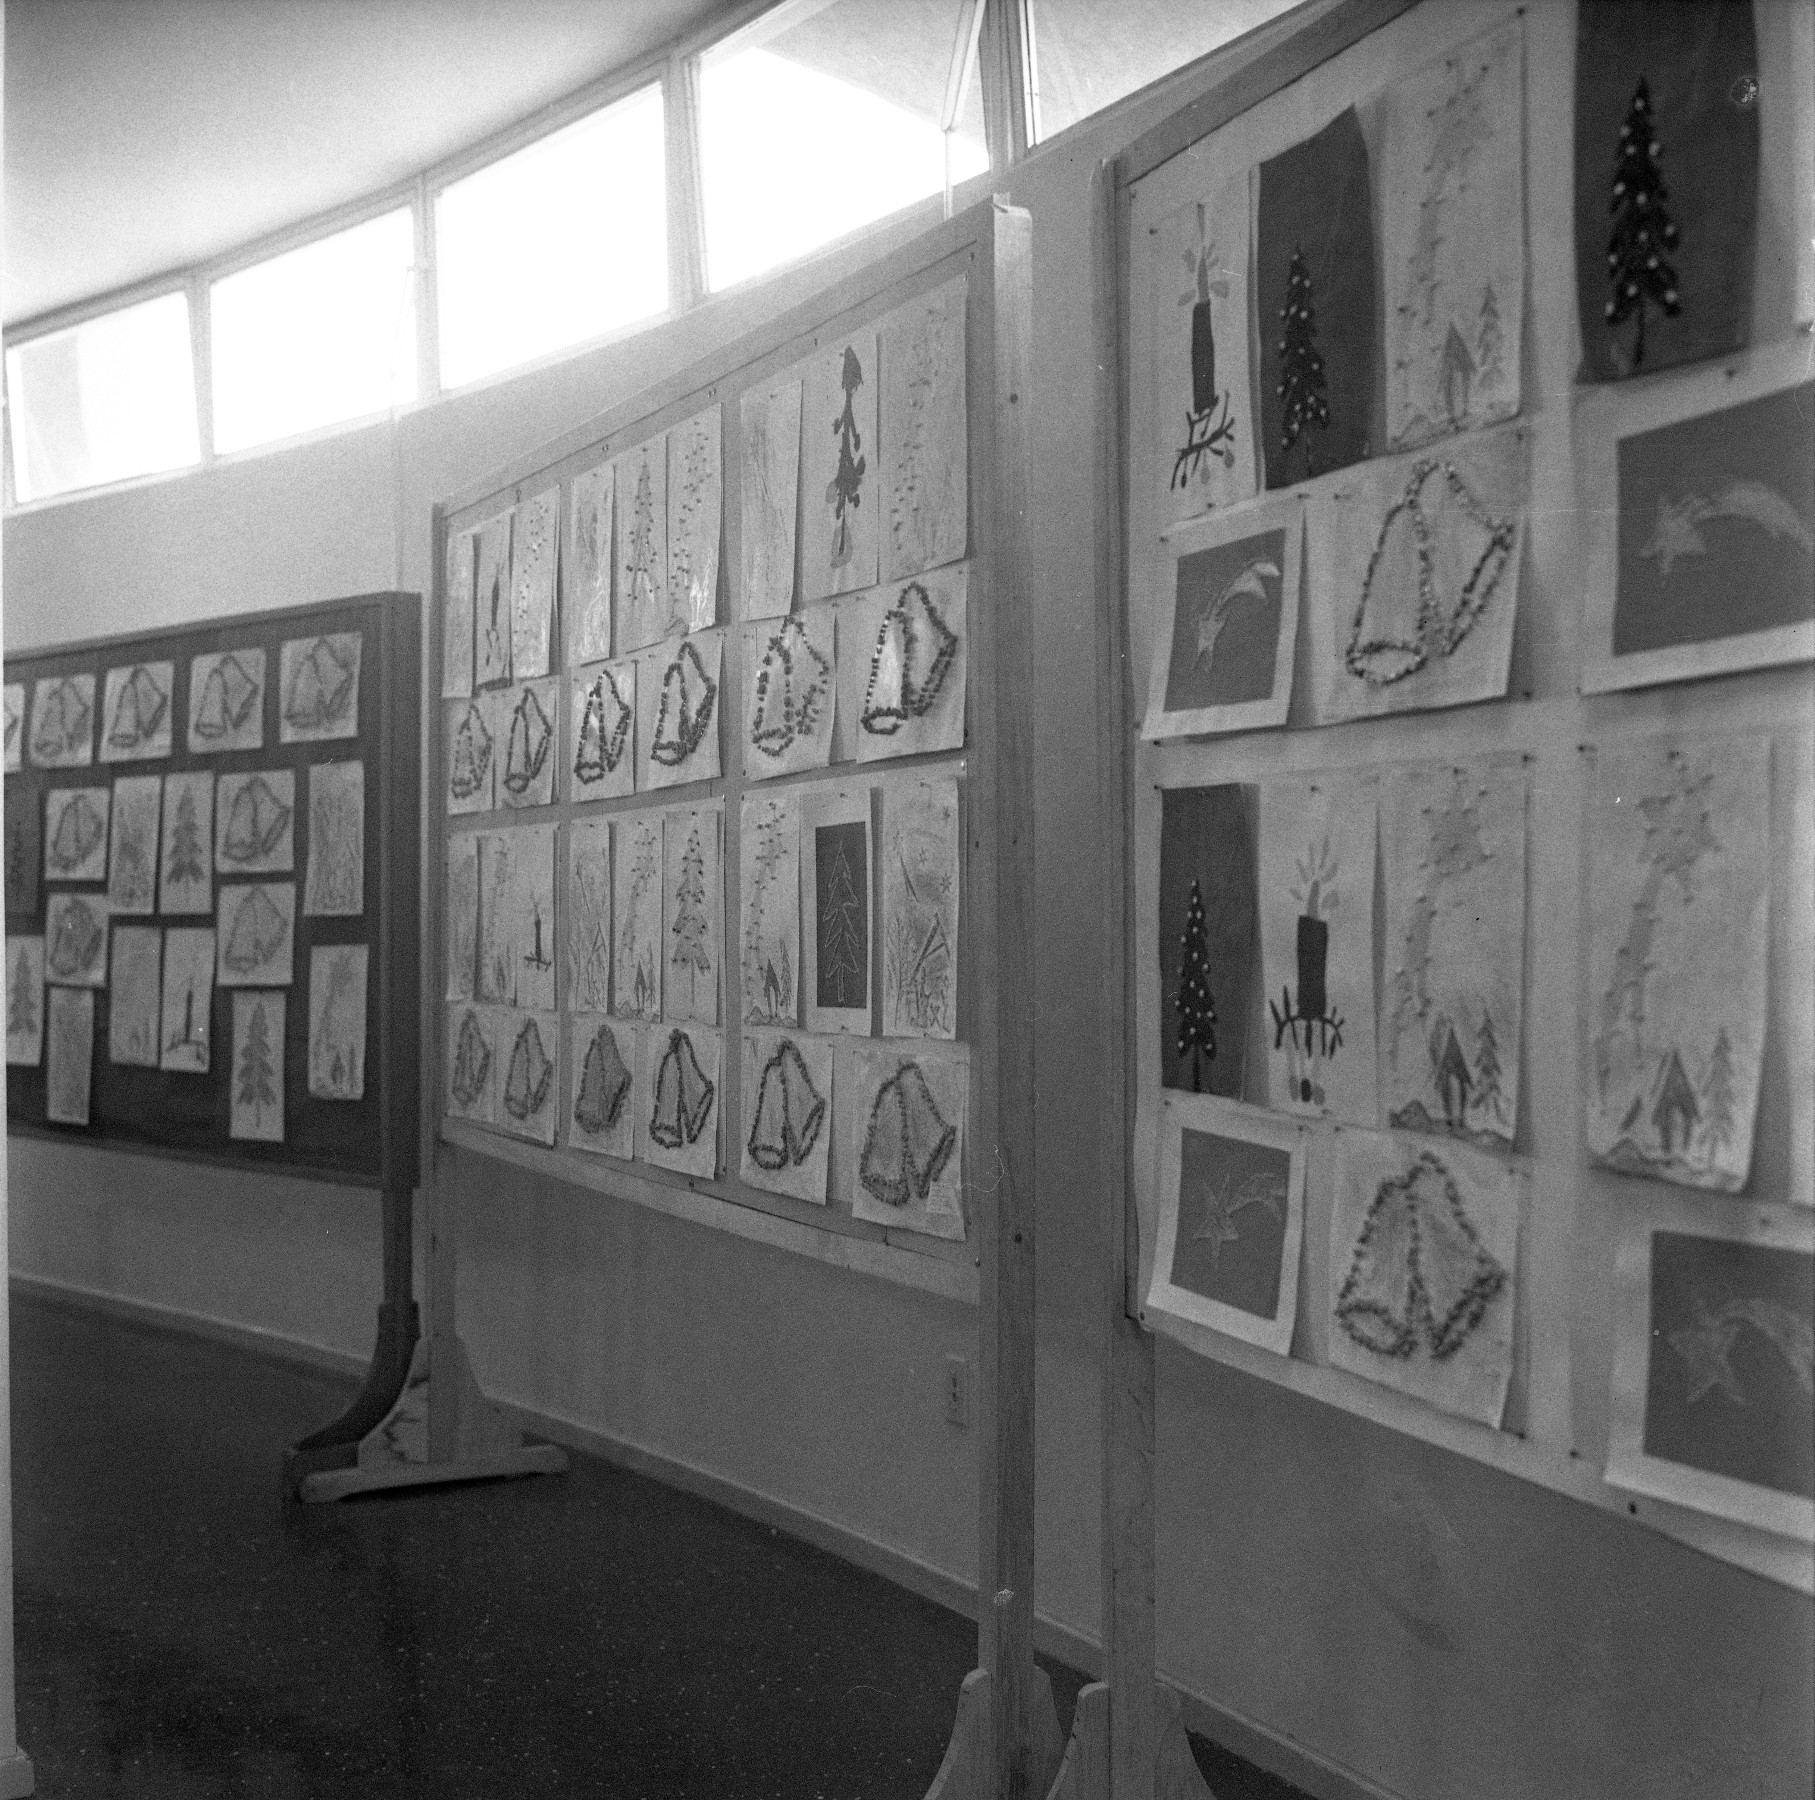 Foto preto e branca de exposição de desenhos na parede.